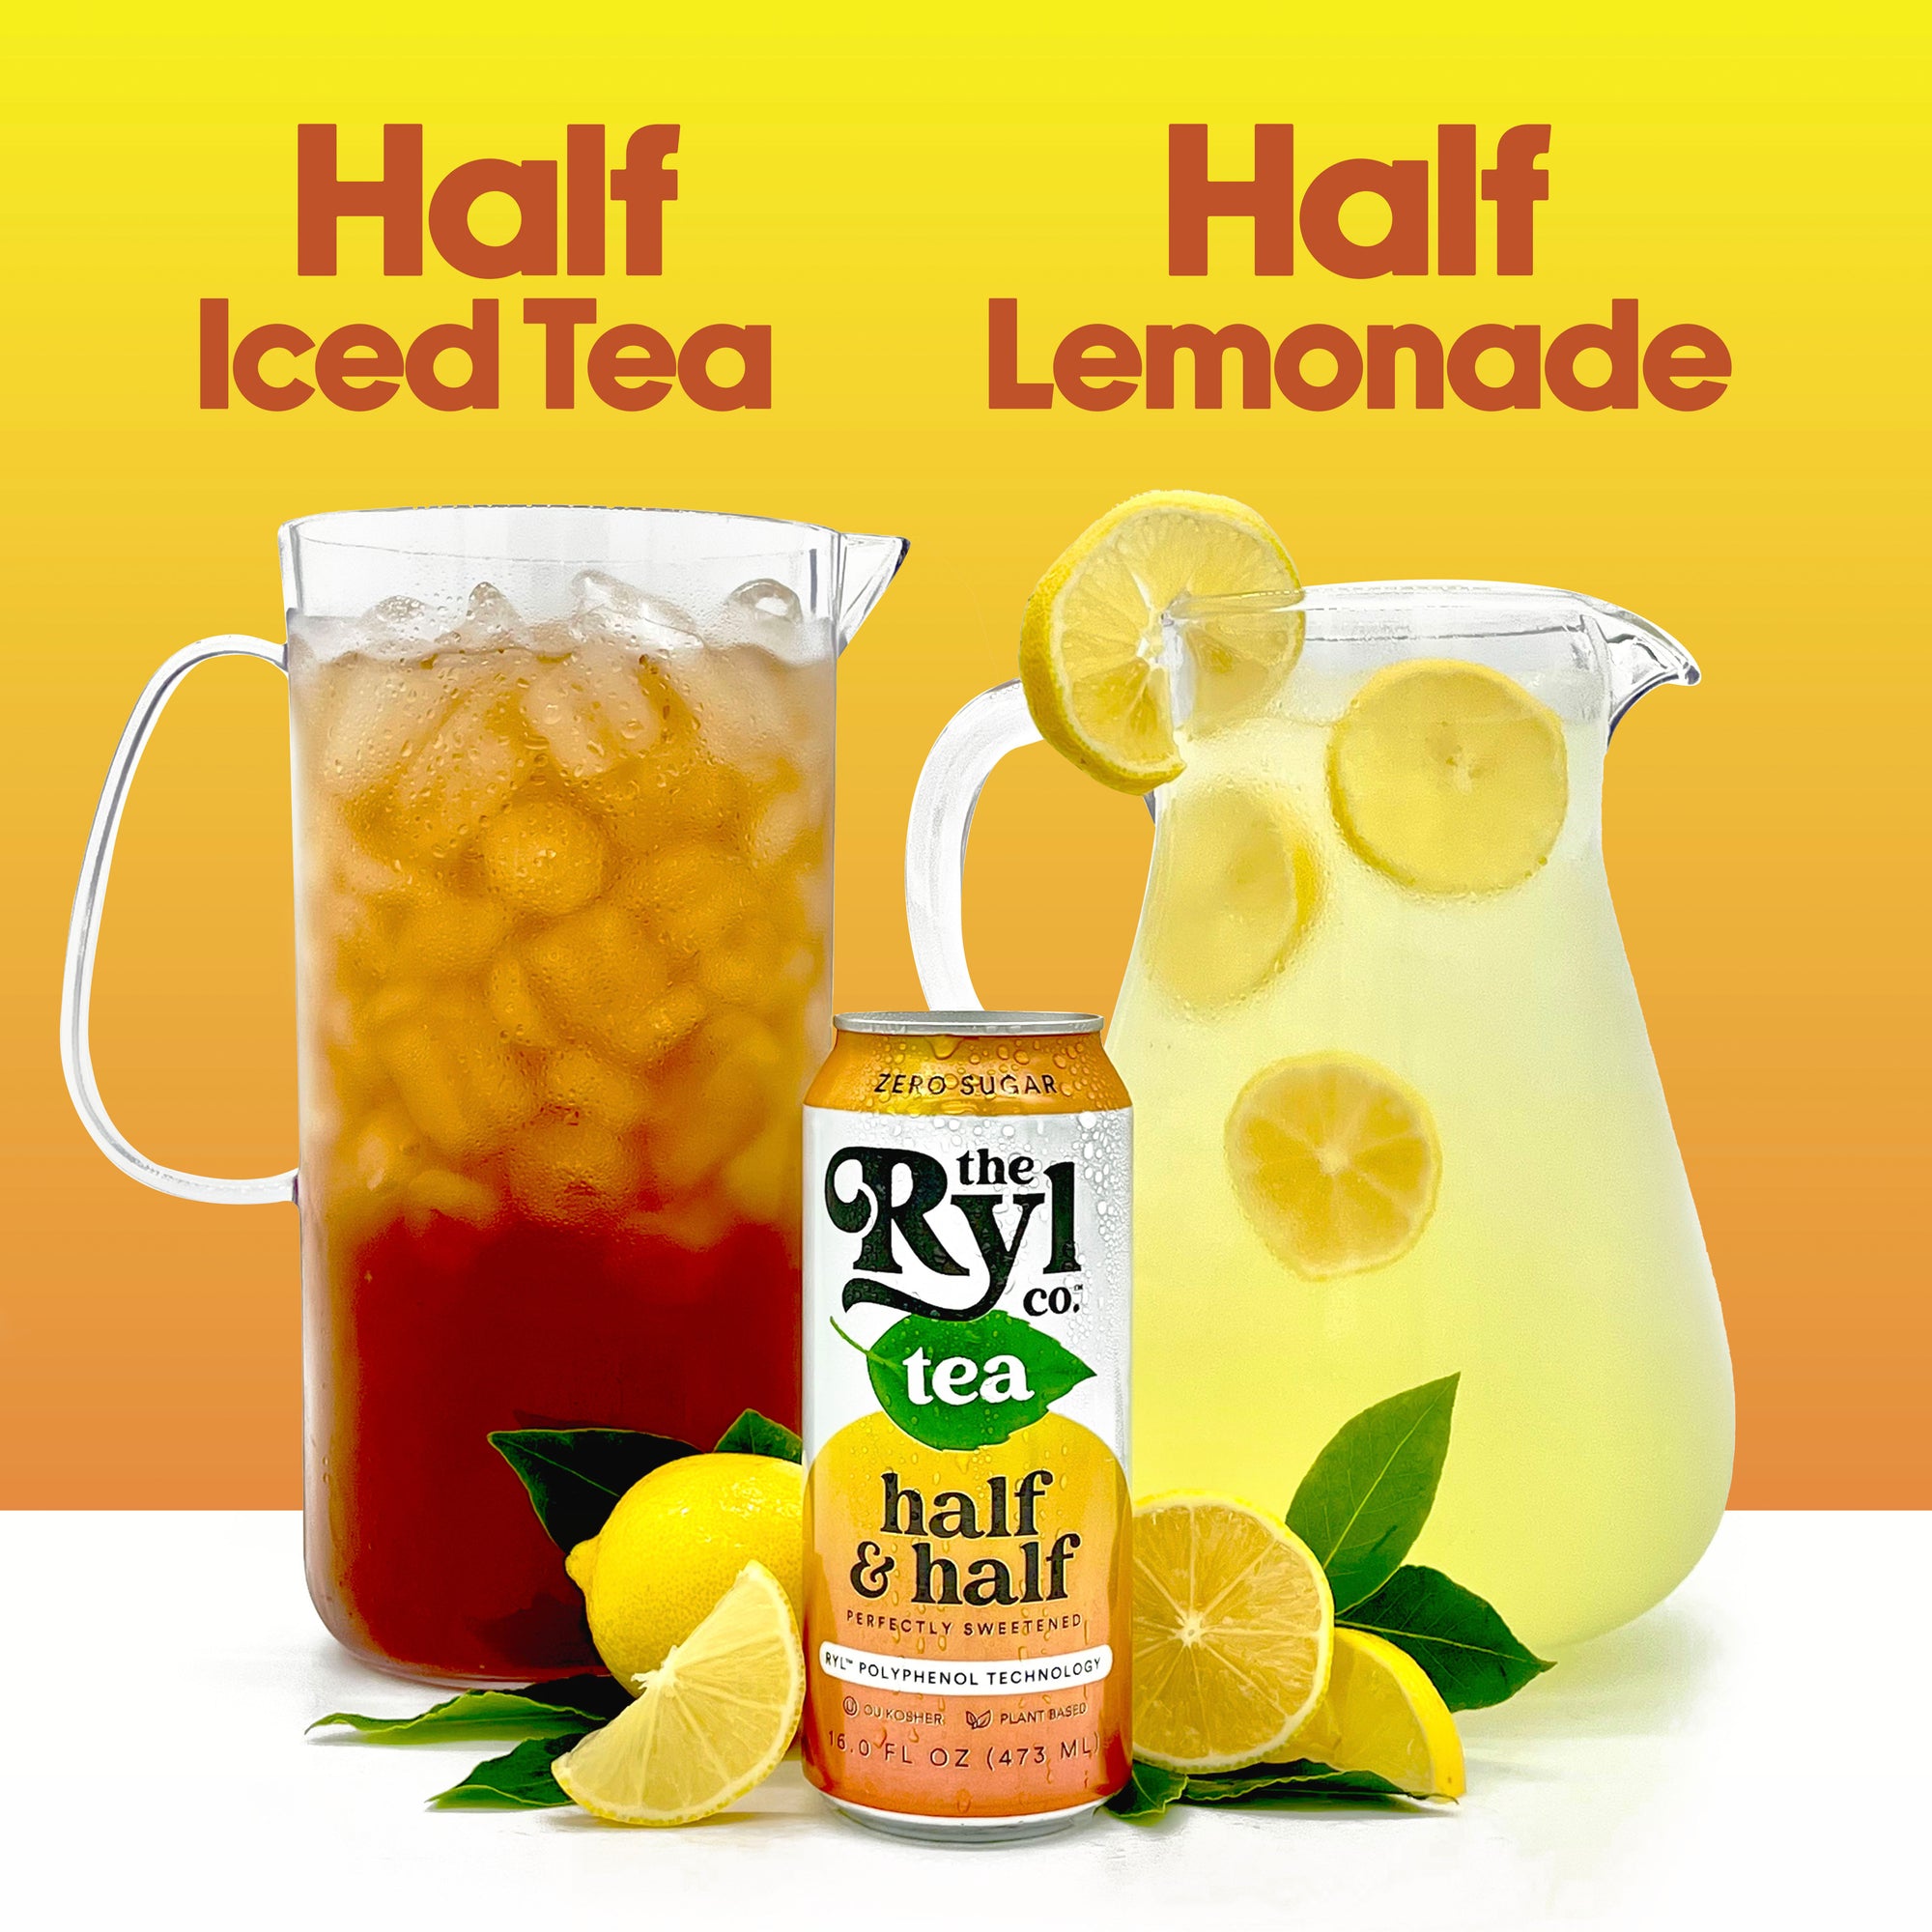 Half Iced Tea & Half Lemonade 12 Pack